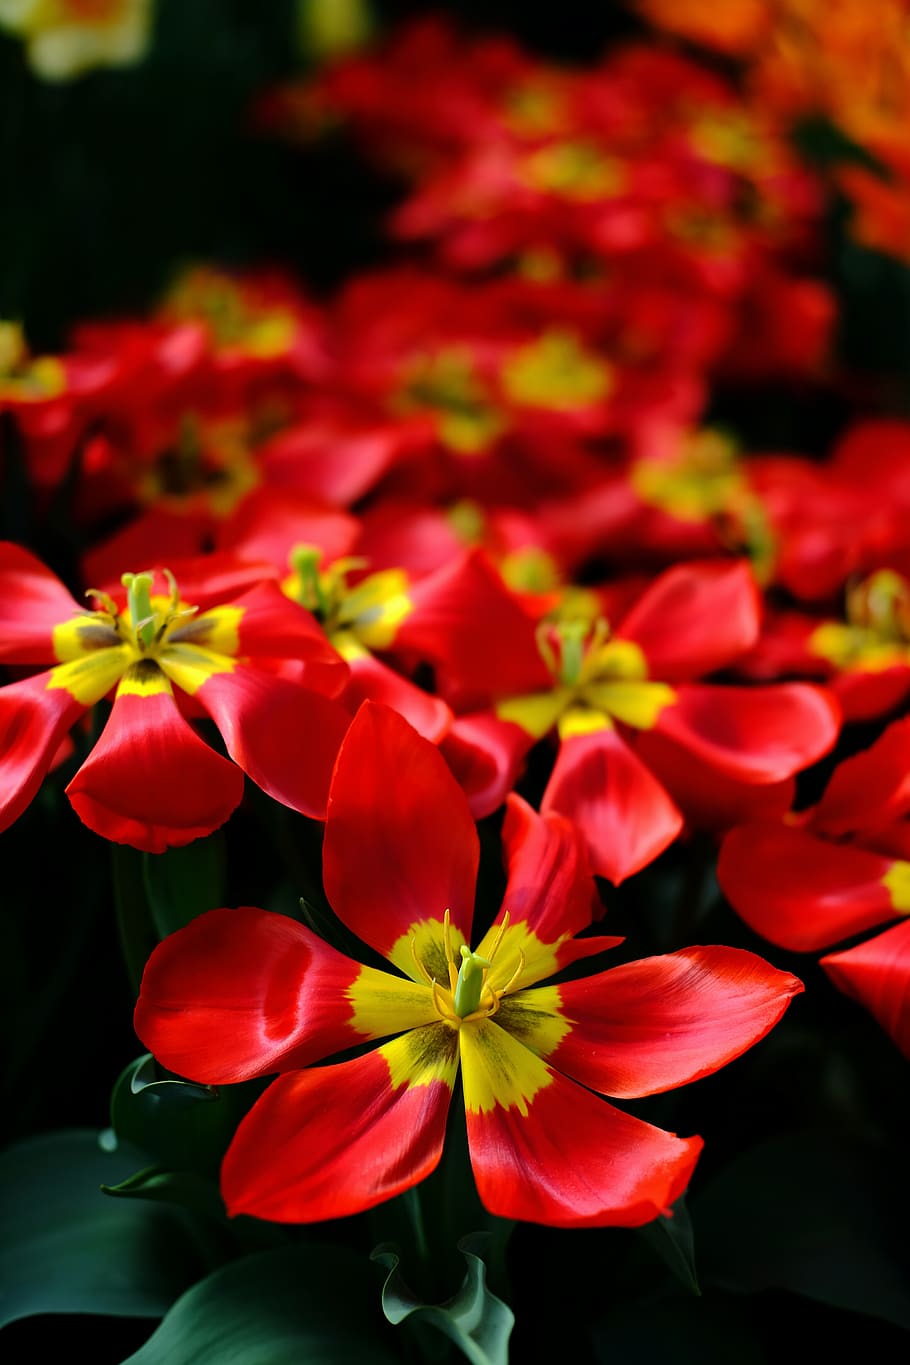 canada, edmonton, muttart conservatory, garden, red, flowers